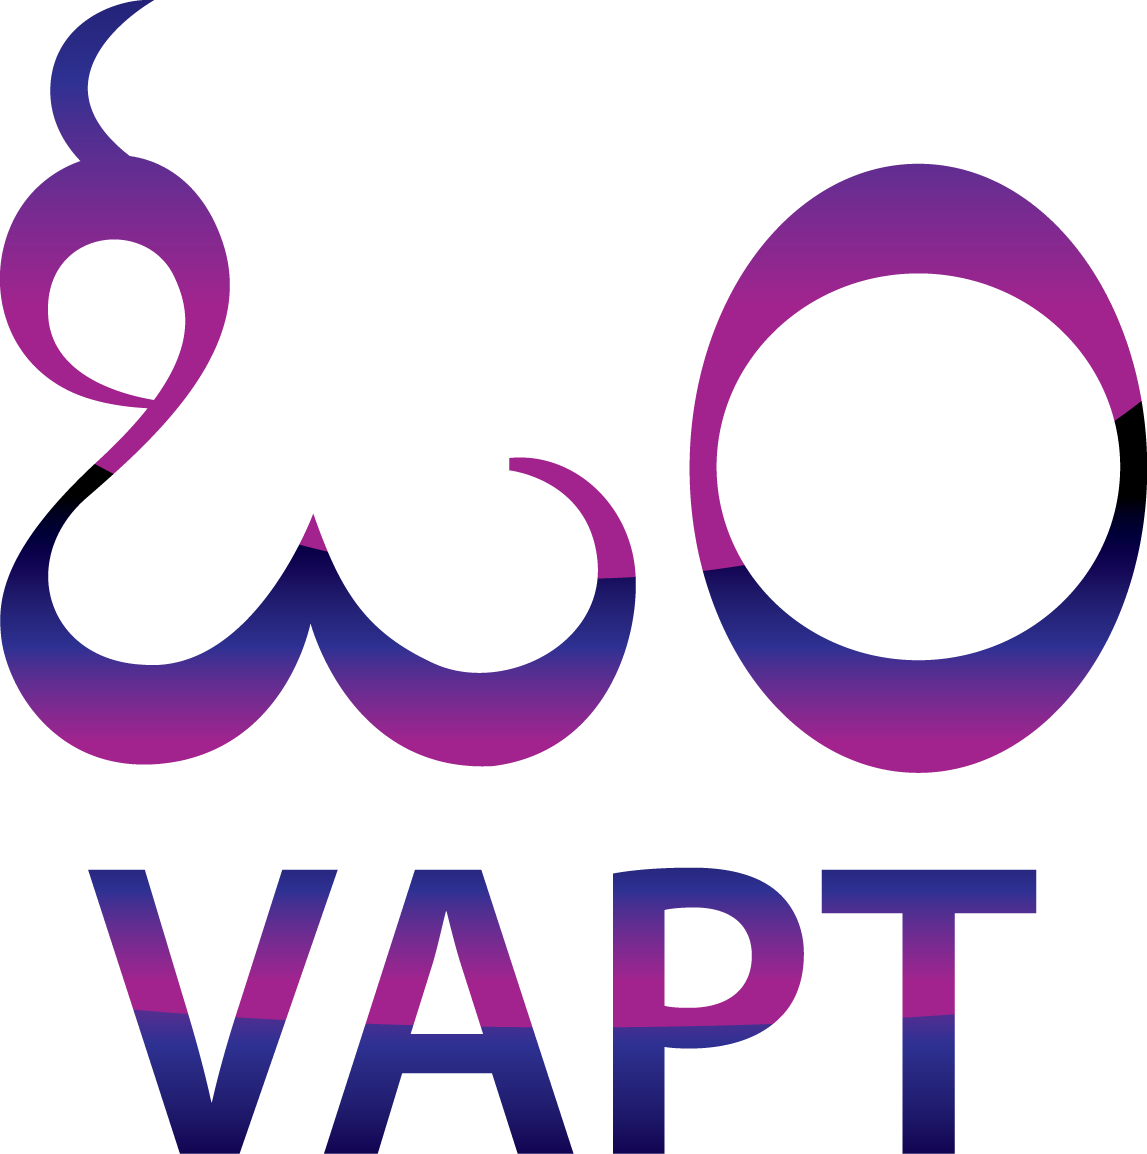 OM VAPT Logo